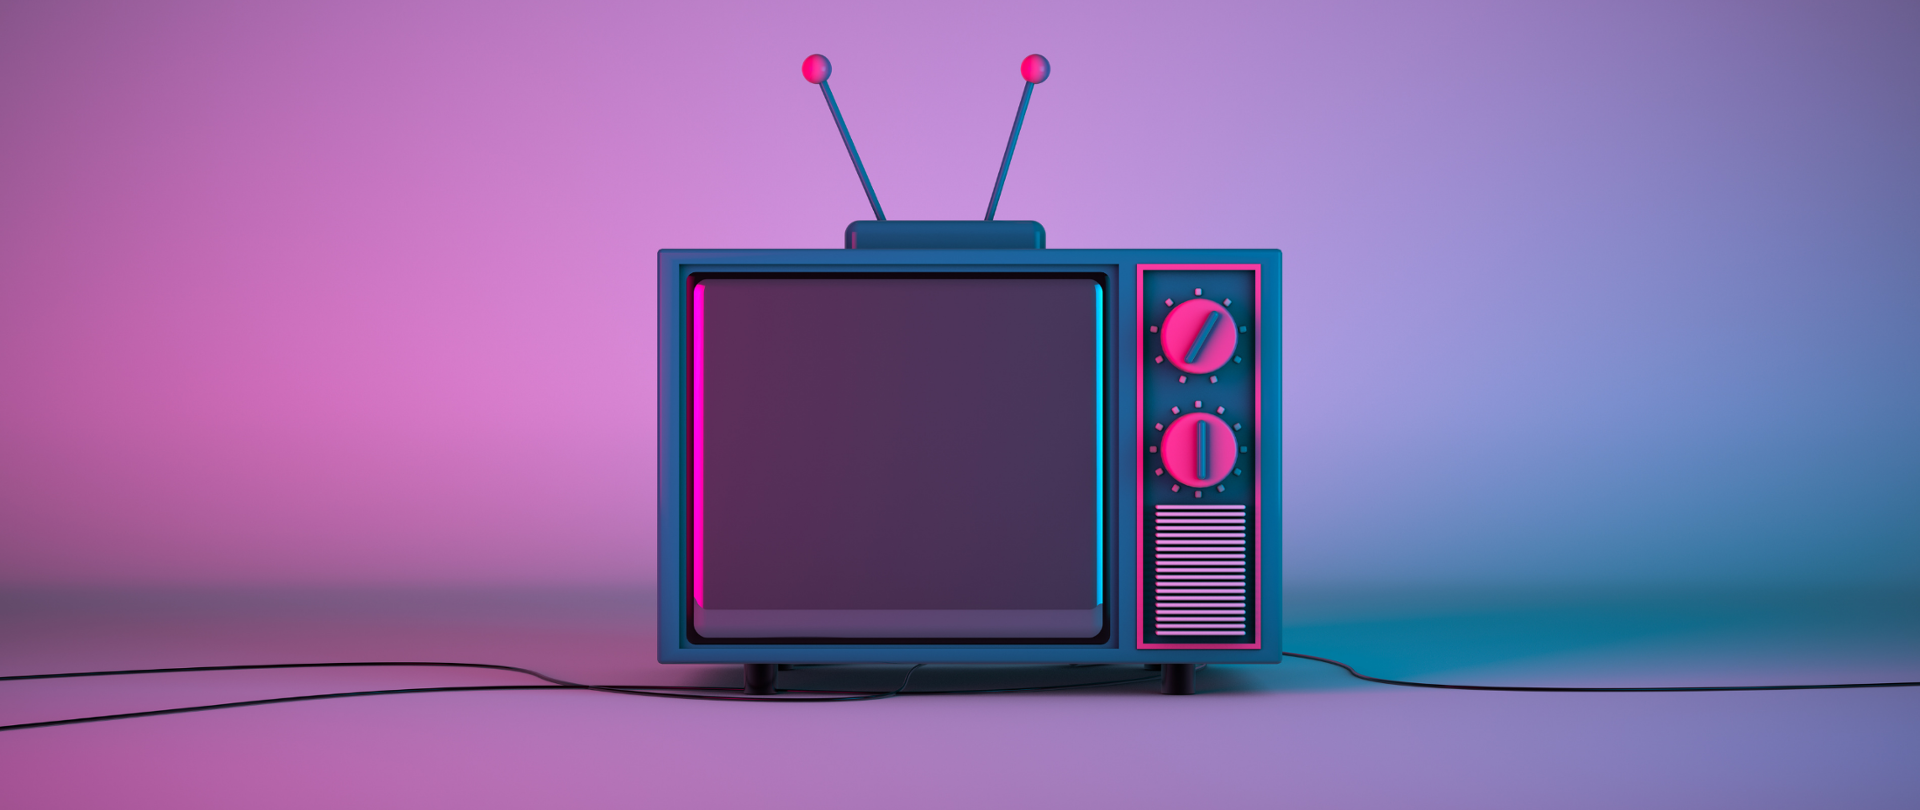 Odbiornik telewizyjny starego typu - całość tło i odbiornik w niebiesko-różowych kolorach.